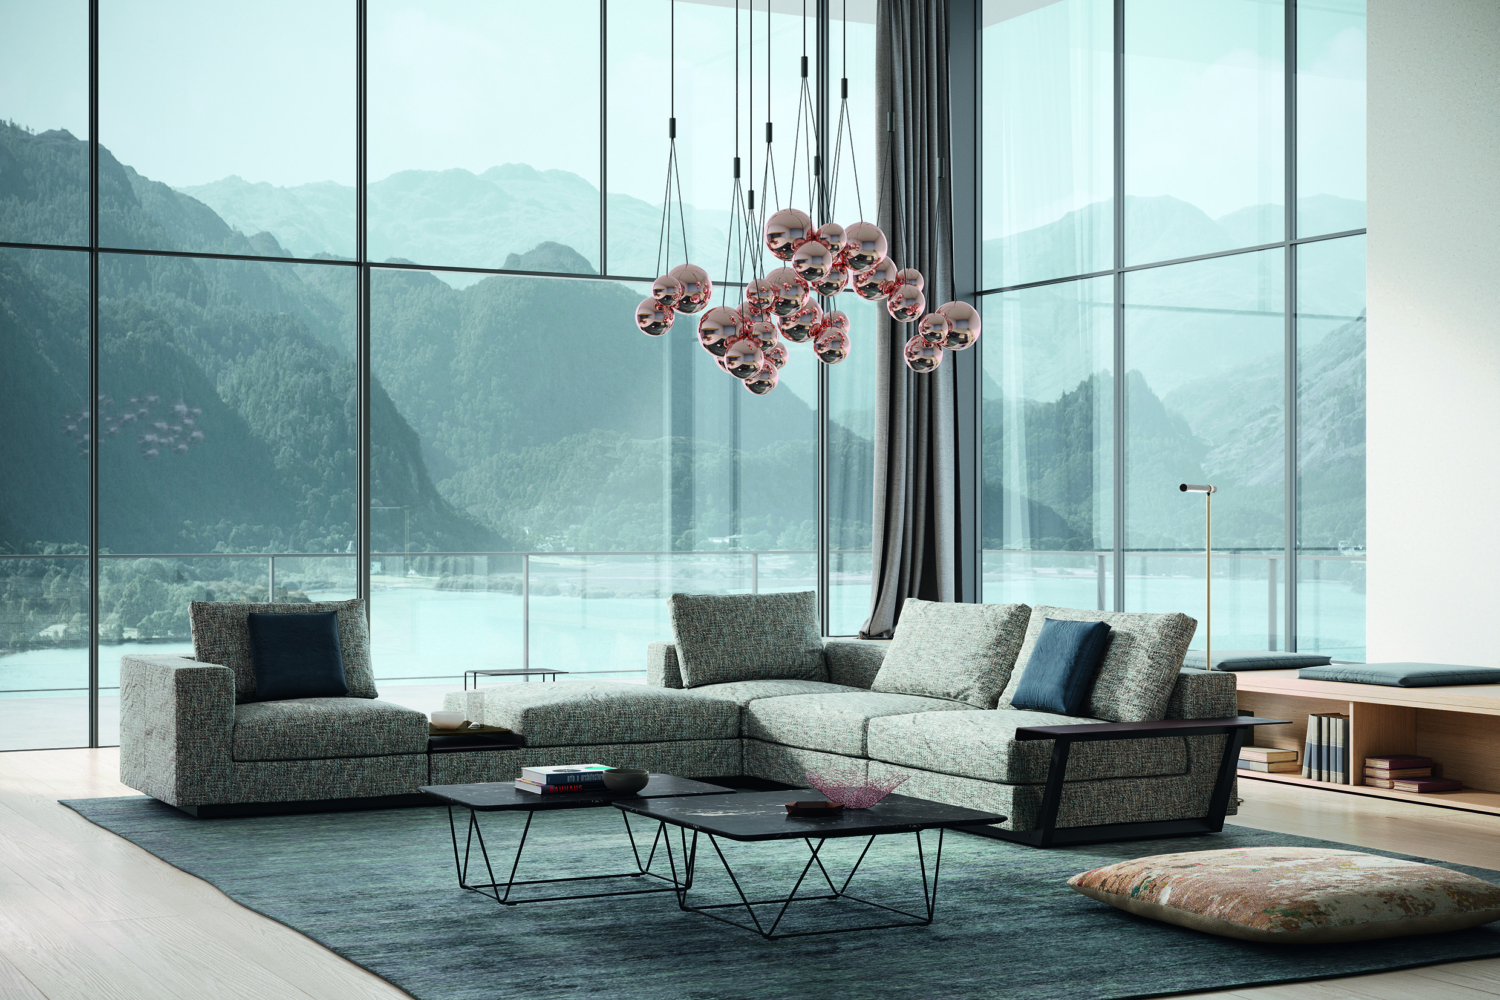 Living Landscape-Sofa von Walter Knoll – Designer-Möbel bestellen bei raumideen nahe Essen.